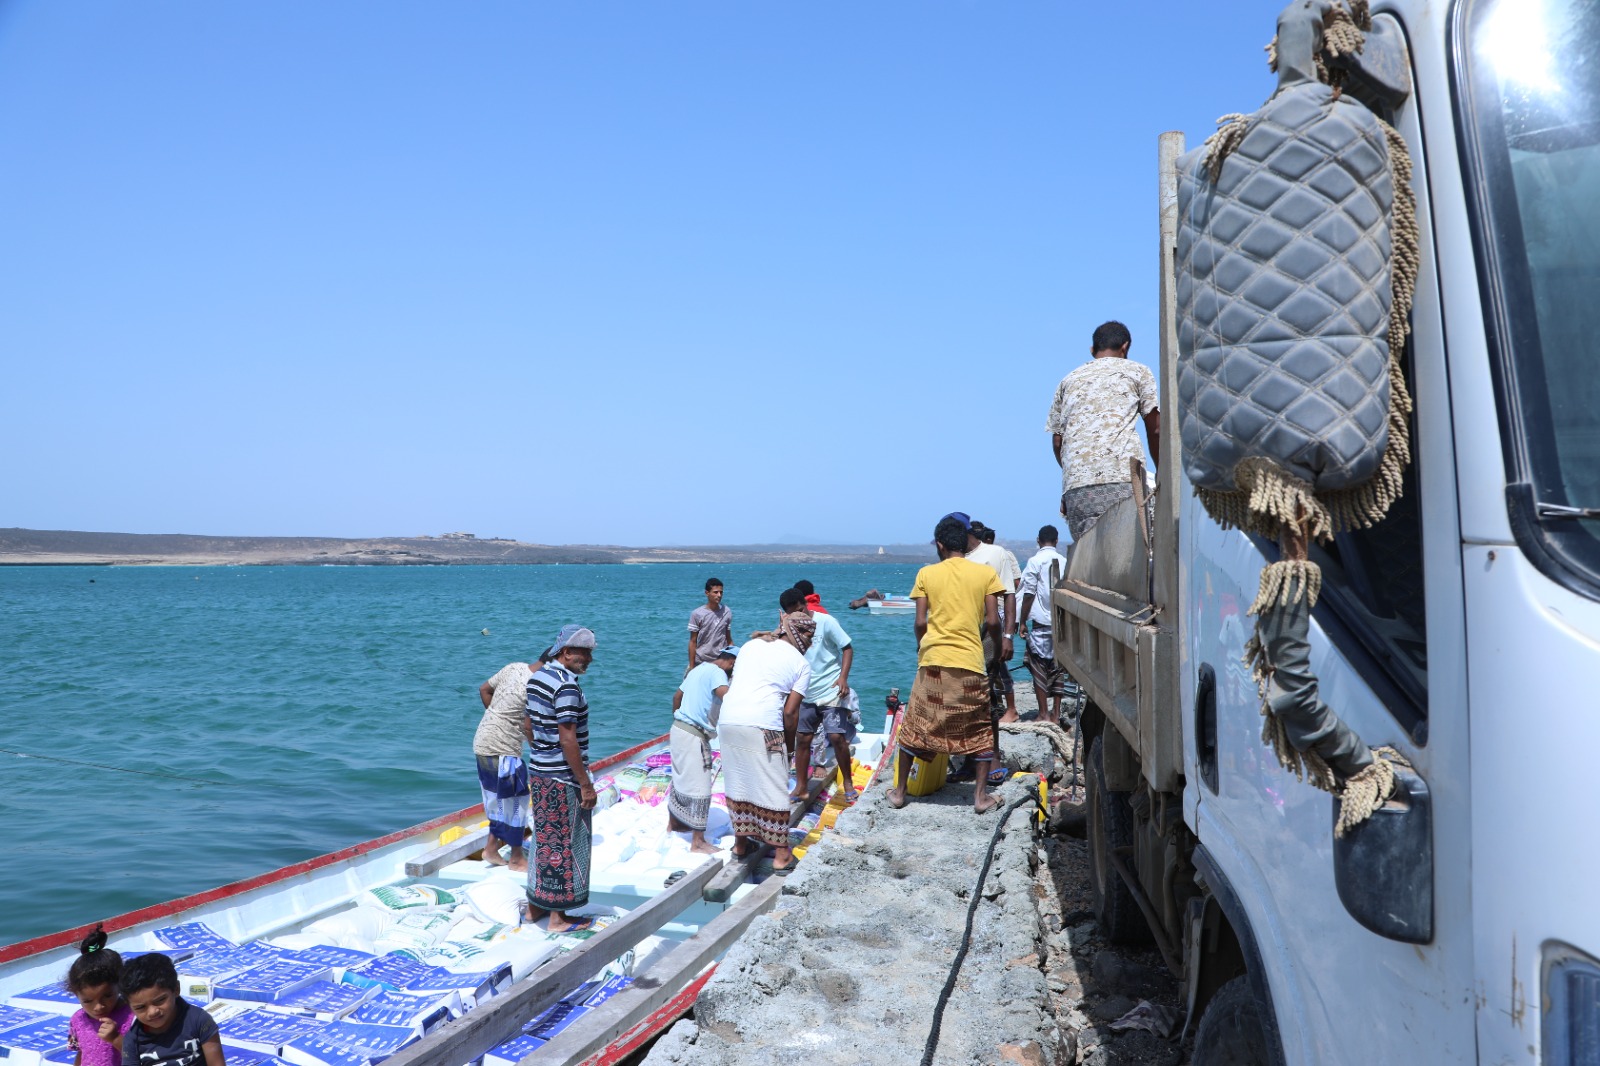 وصول سلل الإغاثة الانسانية المقدمة من دولة الإمارات الى جزيرة ميون